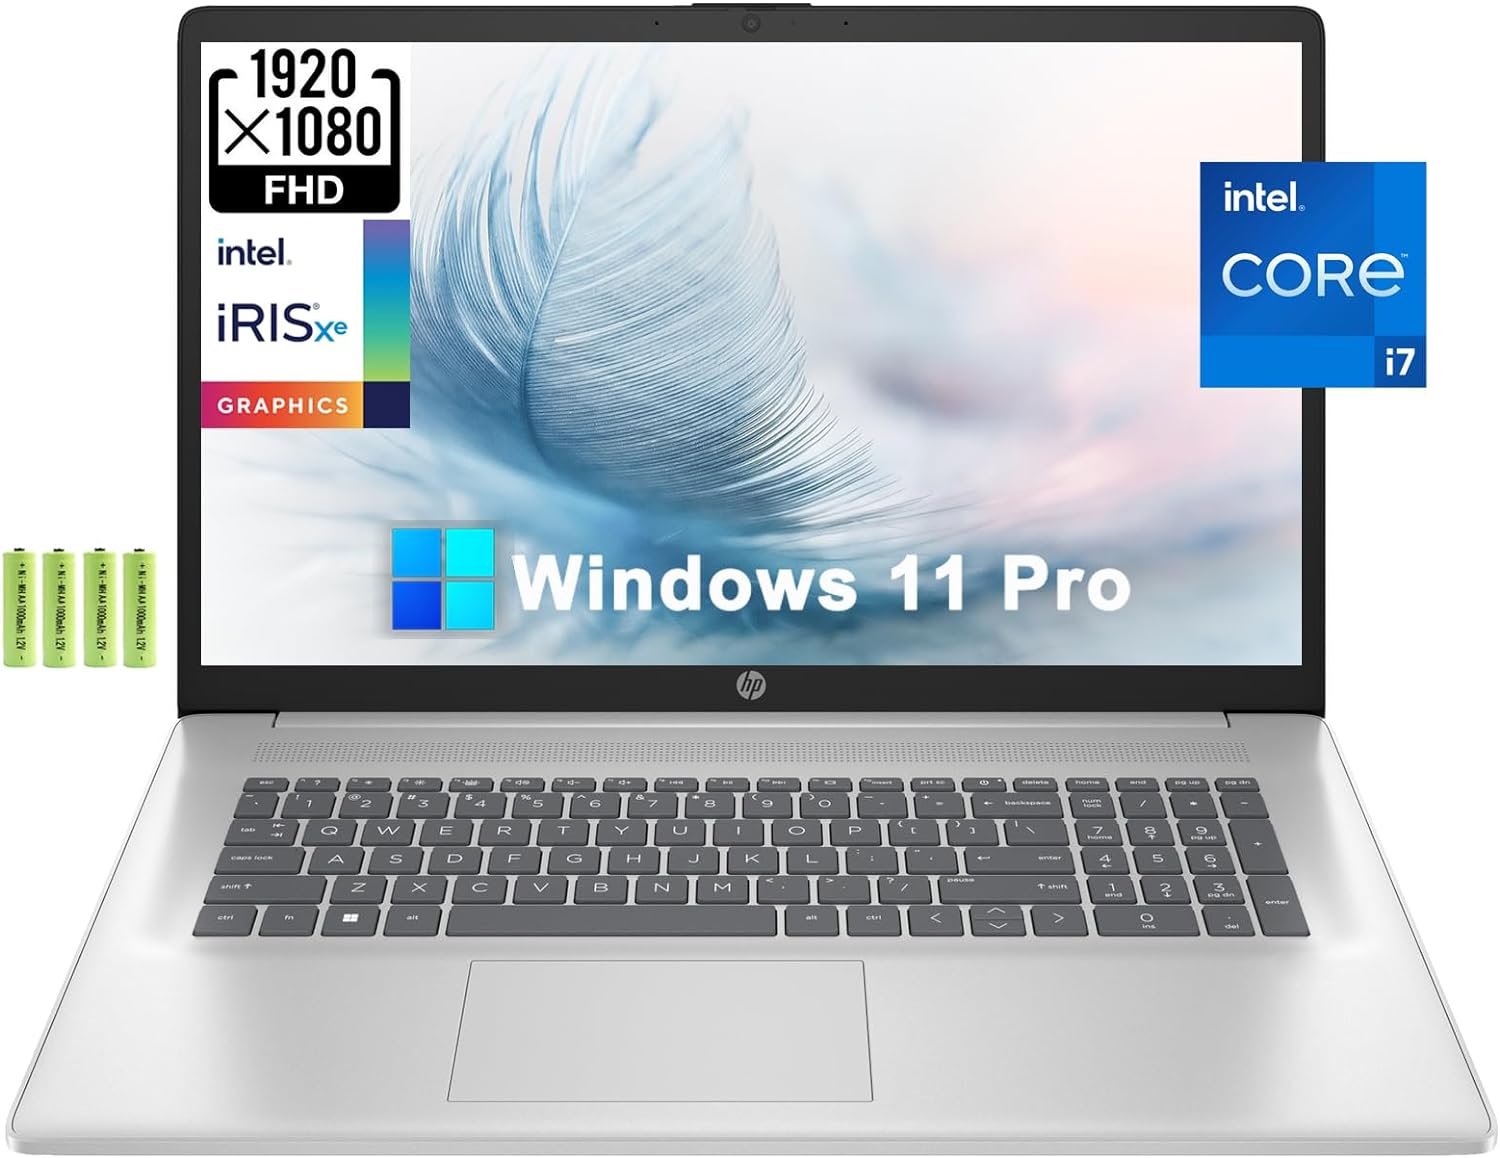 HP 17 17.3" FHD IPS Business Laptop Computer